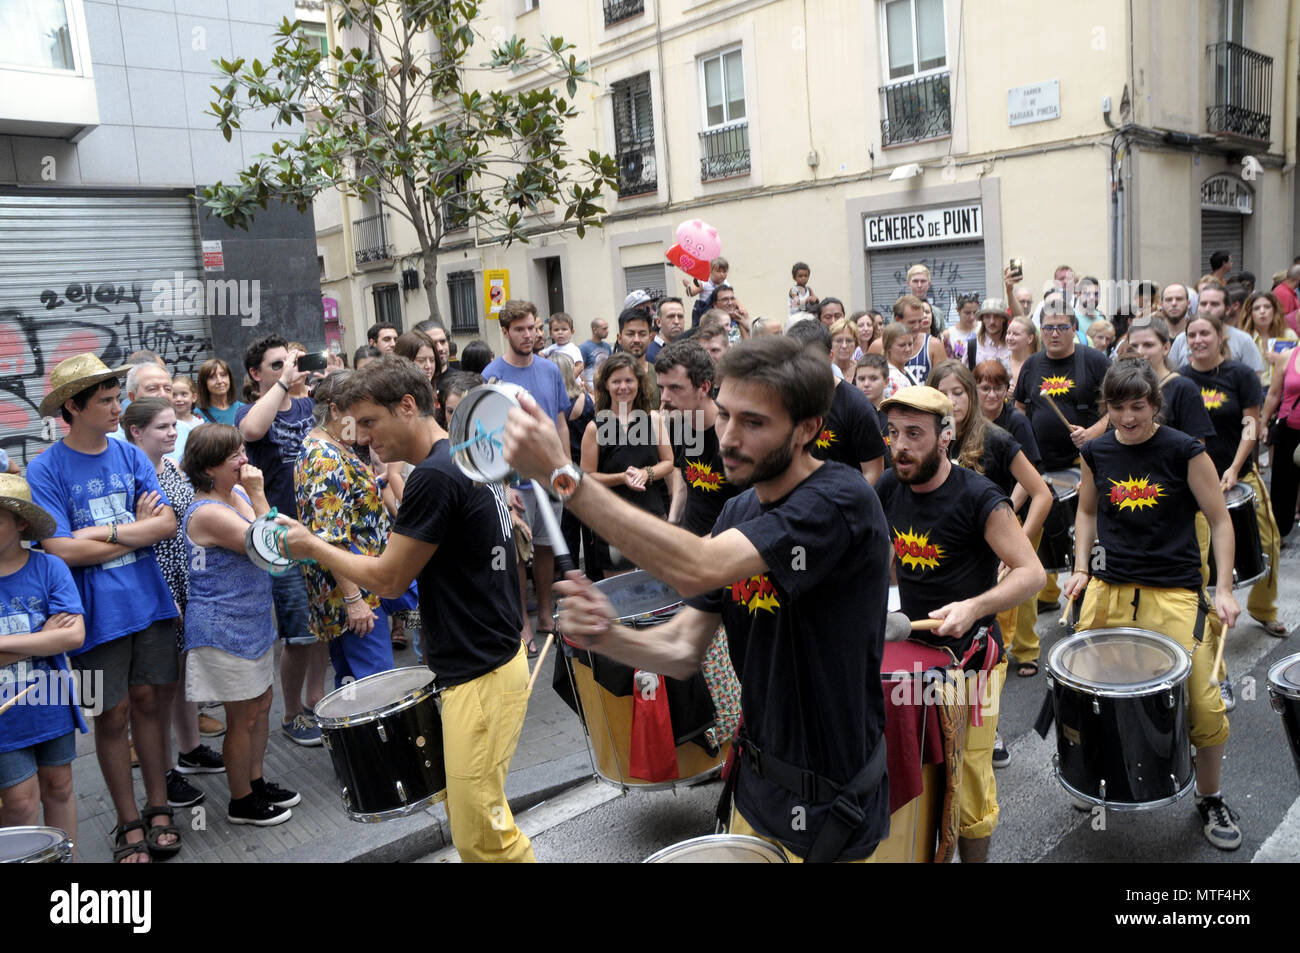 STRETS DECORETED durante il quartiere Gracia Summer Festival di Barcellona, persone che visitano le varie strade decorazioni intorno a Gracia fest. Foto: Rosmi Foto Stock